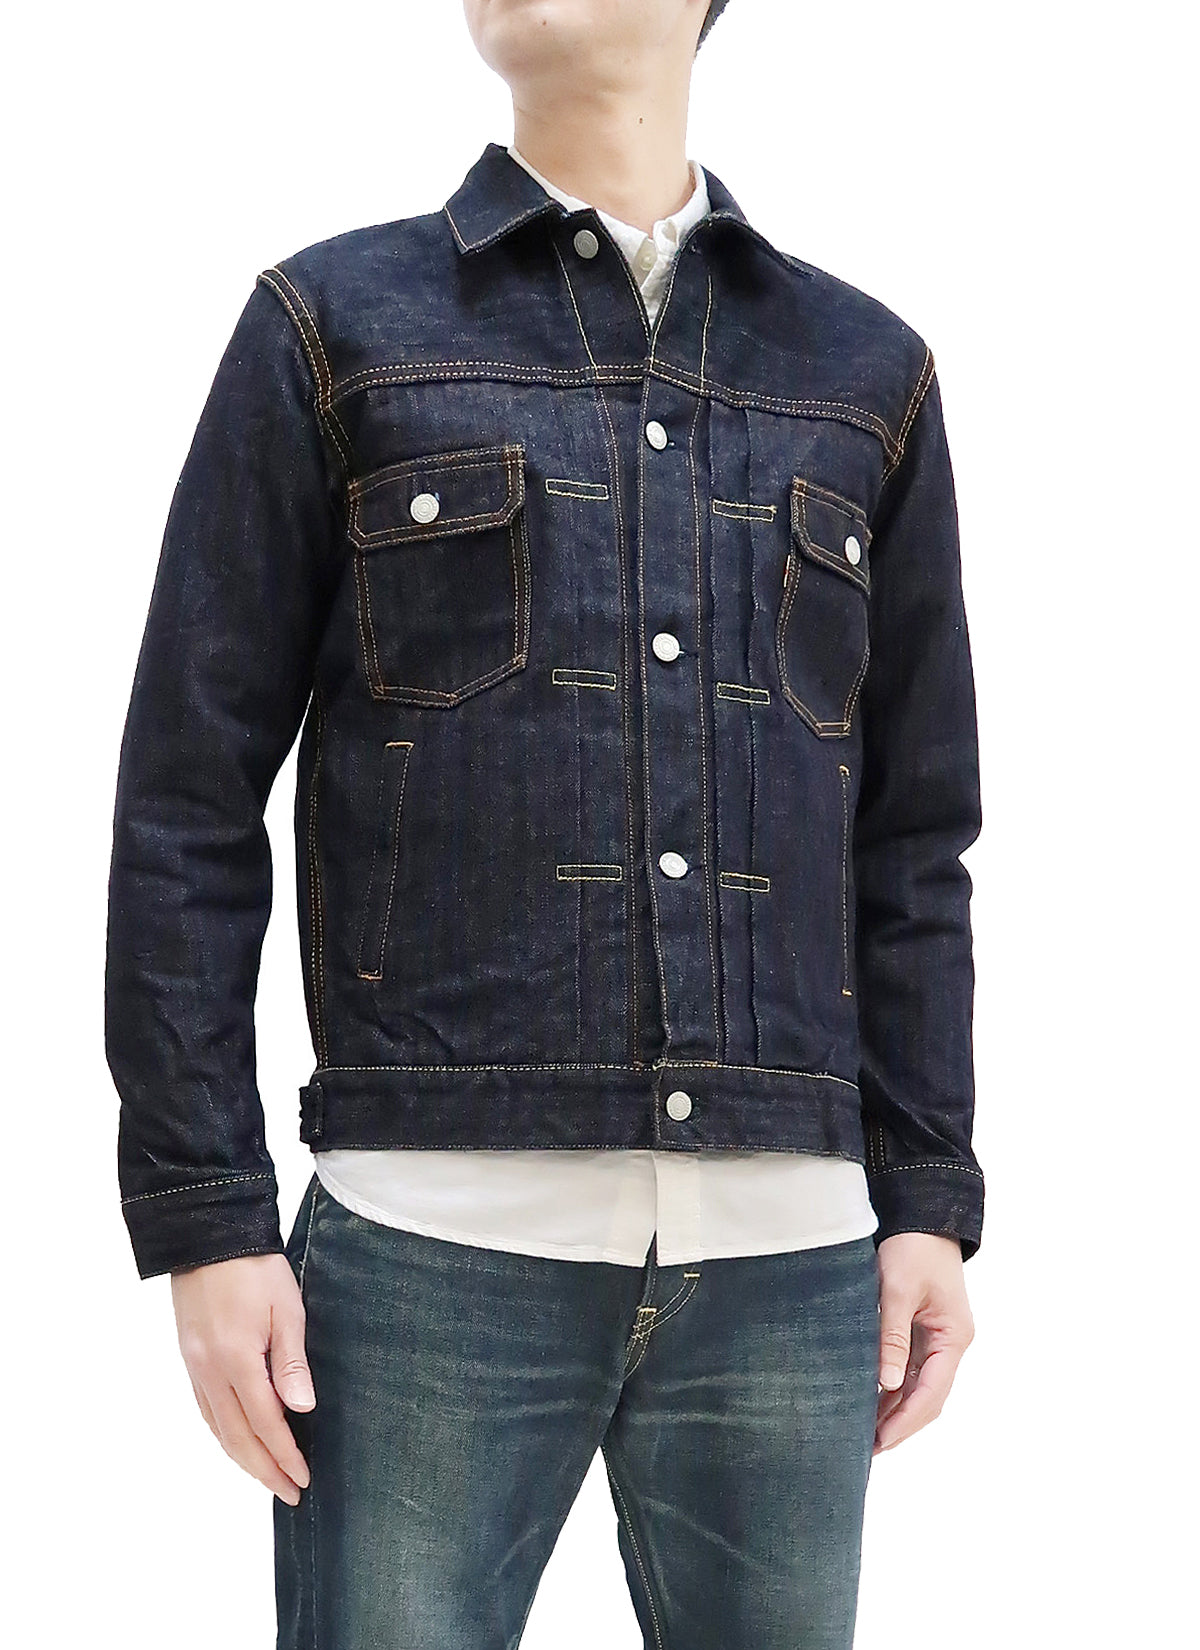 Momotaro Jeans Jacket Men's Modern Indigo Herringbone Denim Trucker Ja ...